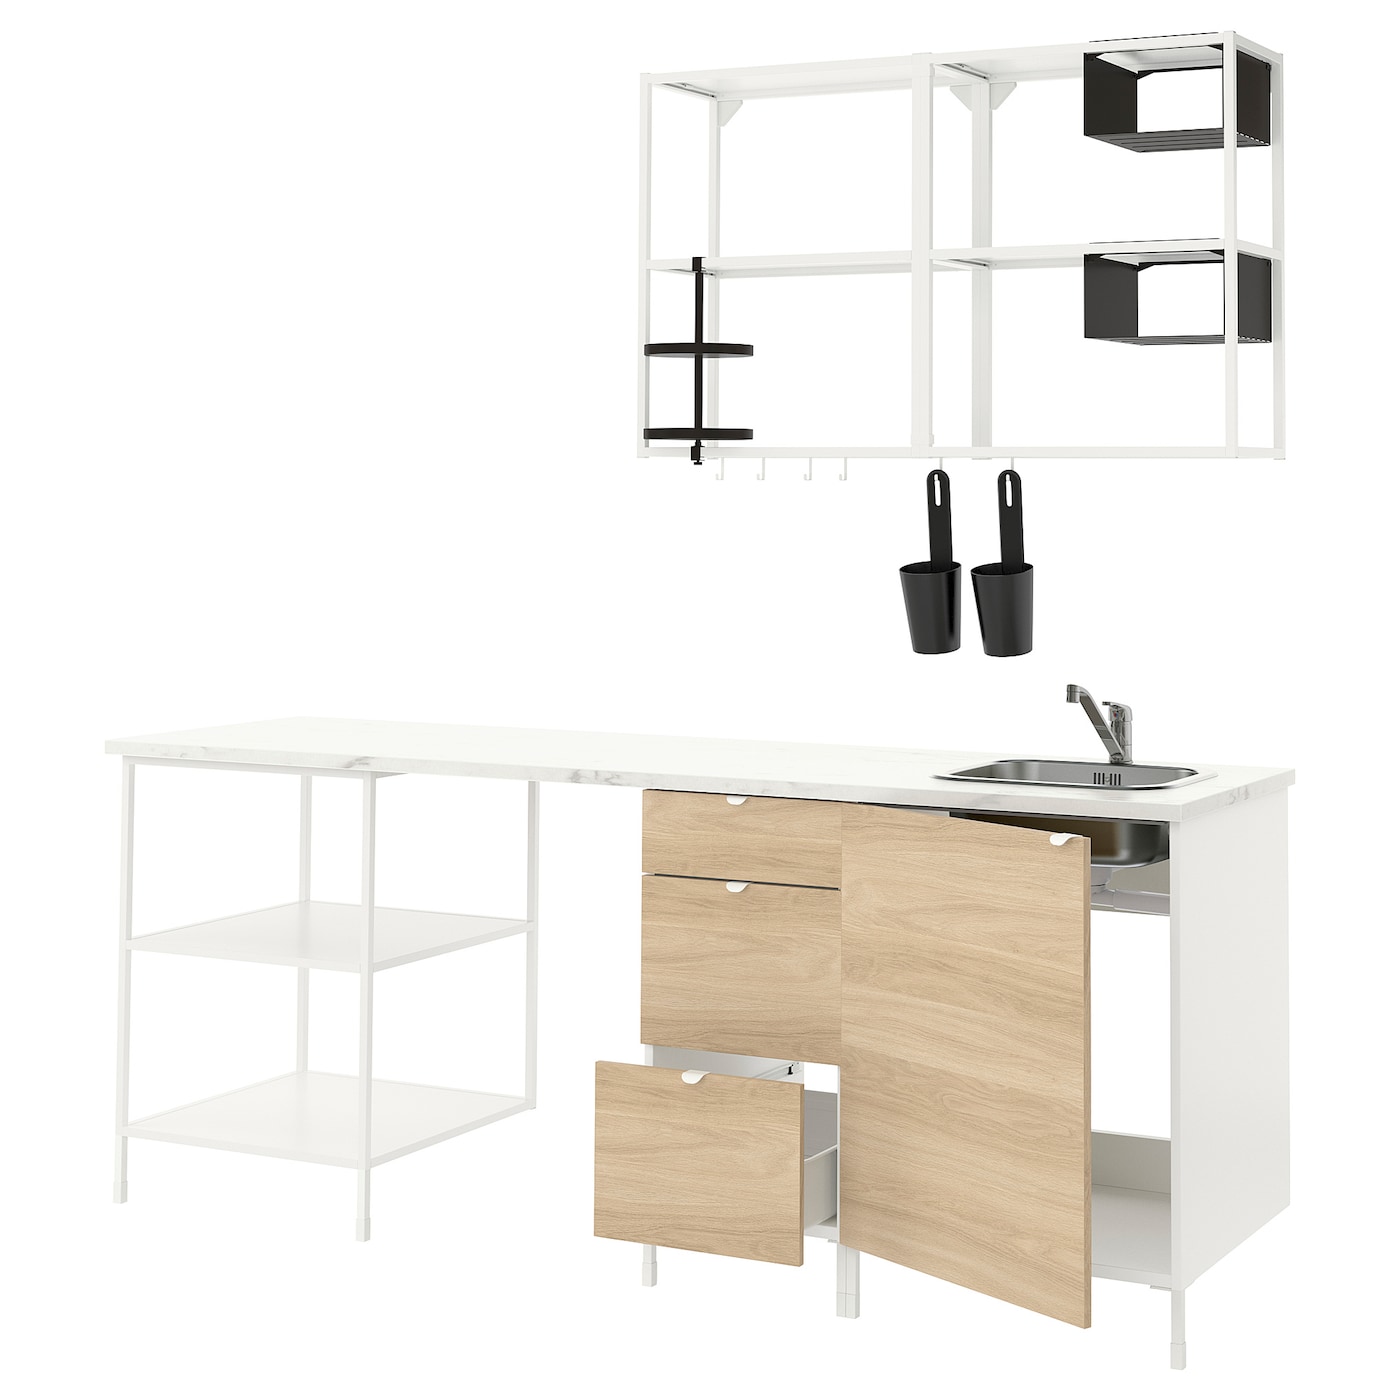 Кухонная комбинация для хранения - ENHET  IKEA/ ЭНХЕТ ИКЕА, 223х63,5х222 см, белый/черный